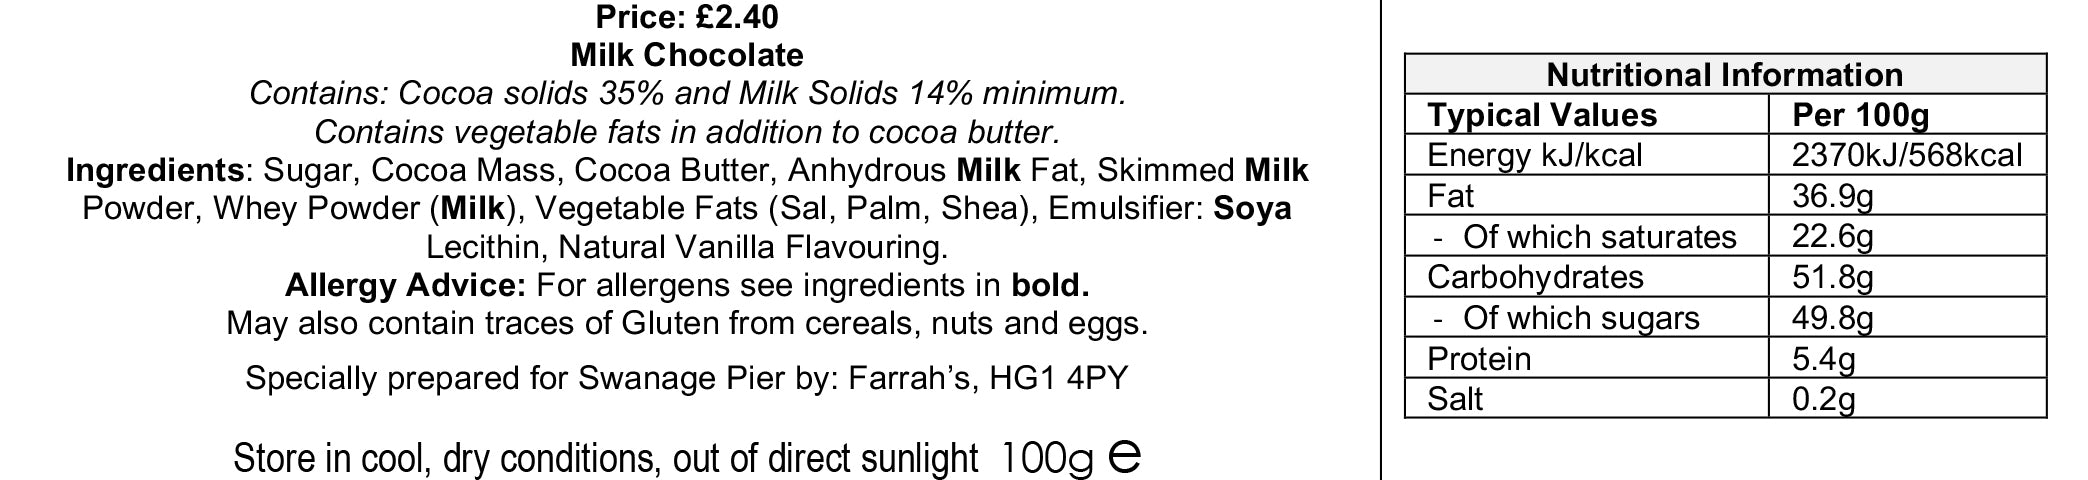 Swanage Pier Luxury Milk Chocolate – 100g bar